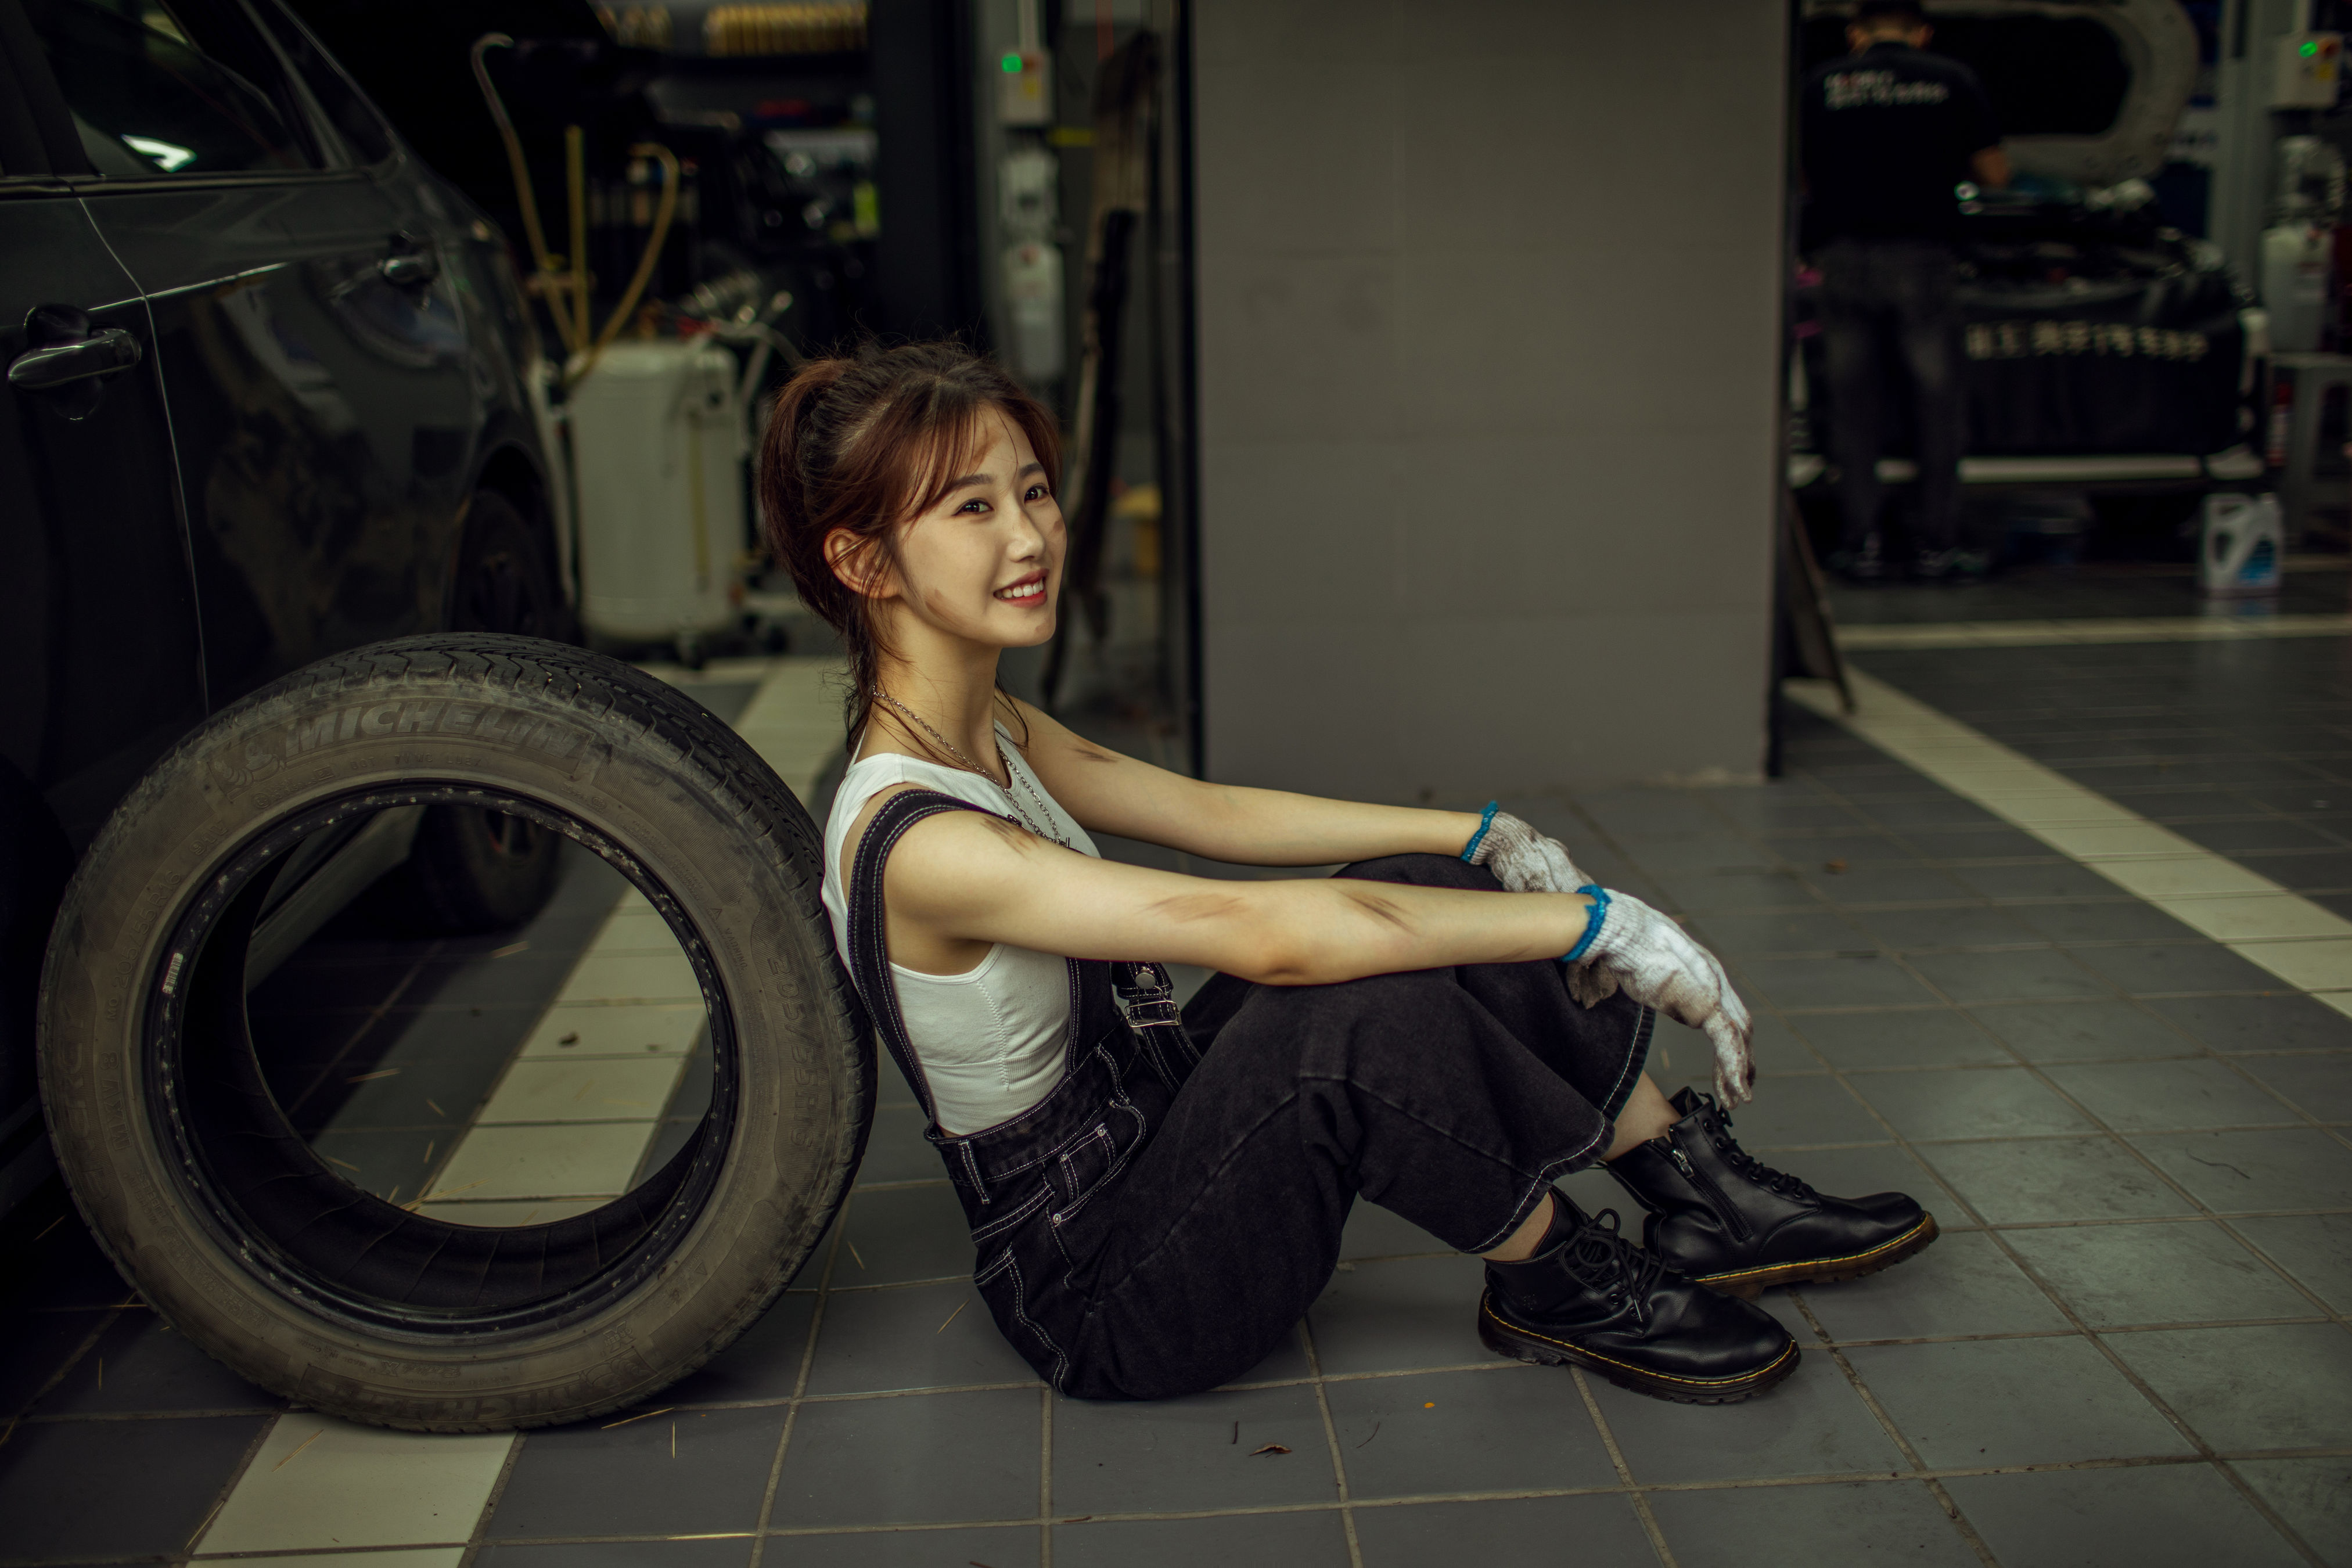 亚洲年轻女修车工 库存图片. 图片 包括有 服务, 解决, 运输, 女性, 工作者, 工程师, 自动, 成人 - 180906313